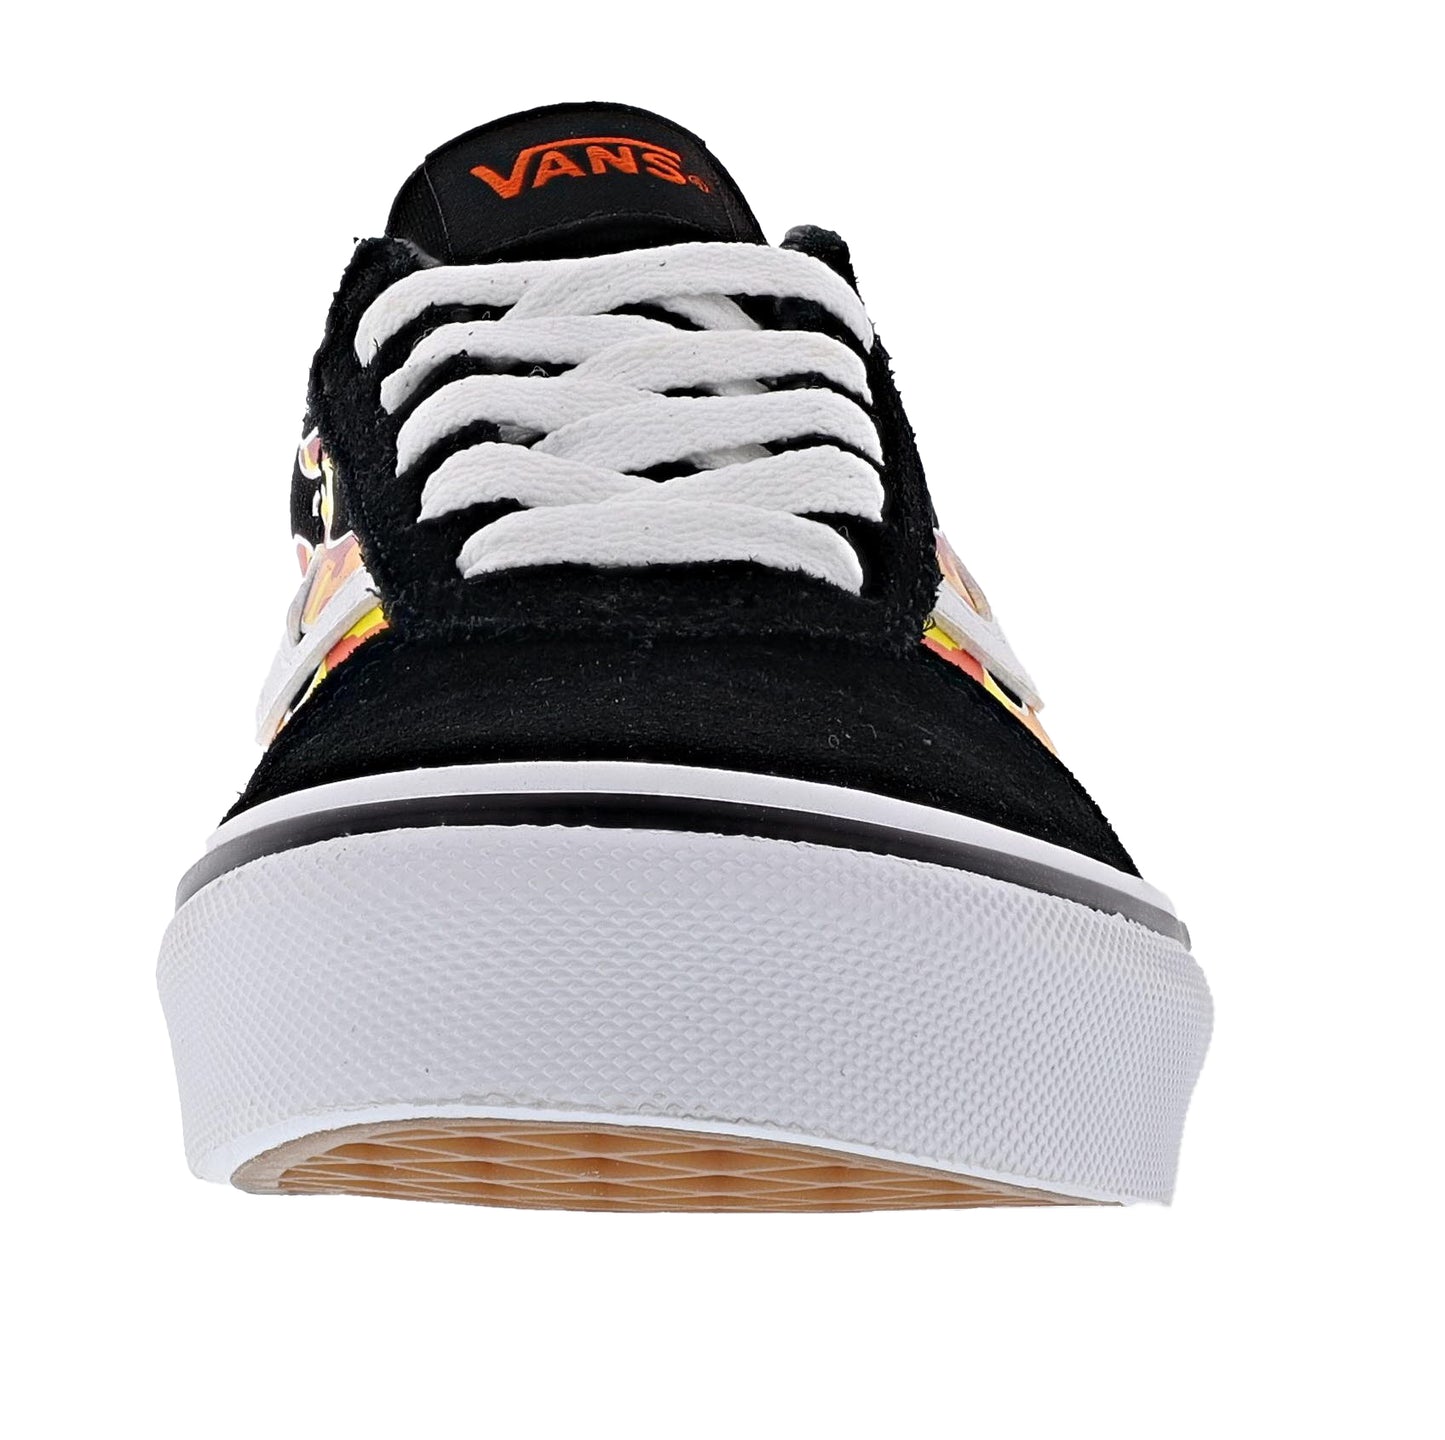 
                  
                    Vans Kid's Ward Low Graphic Design Sneakers
                  
                